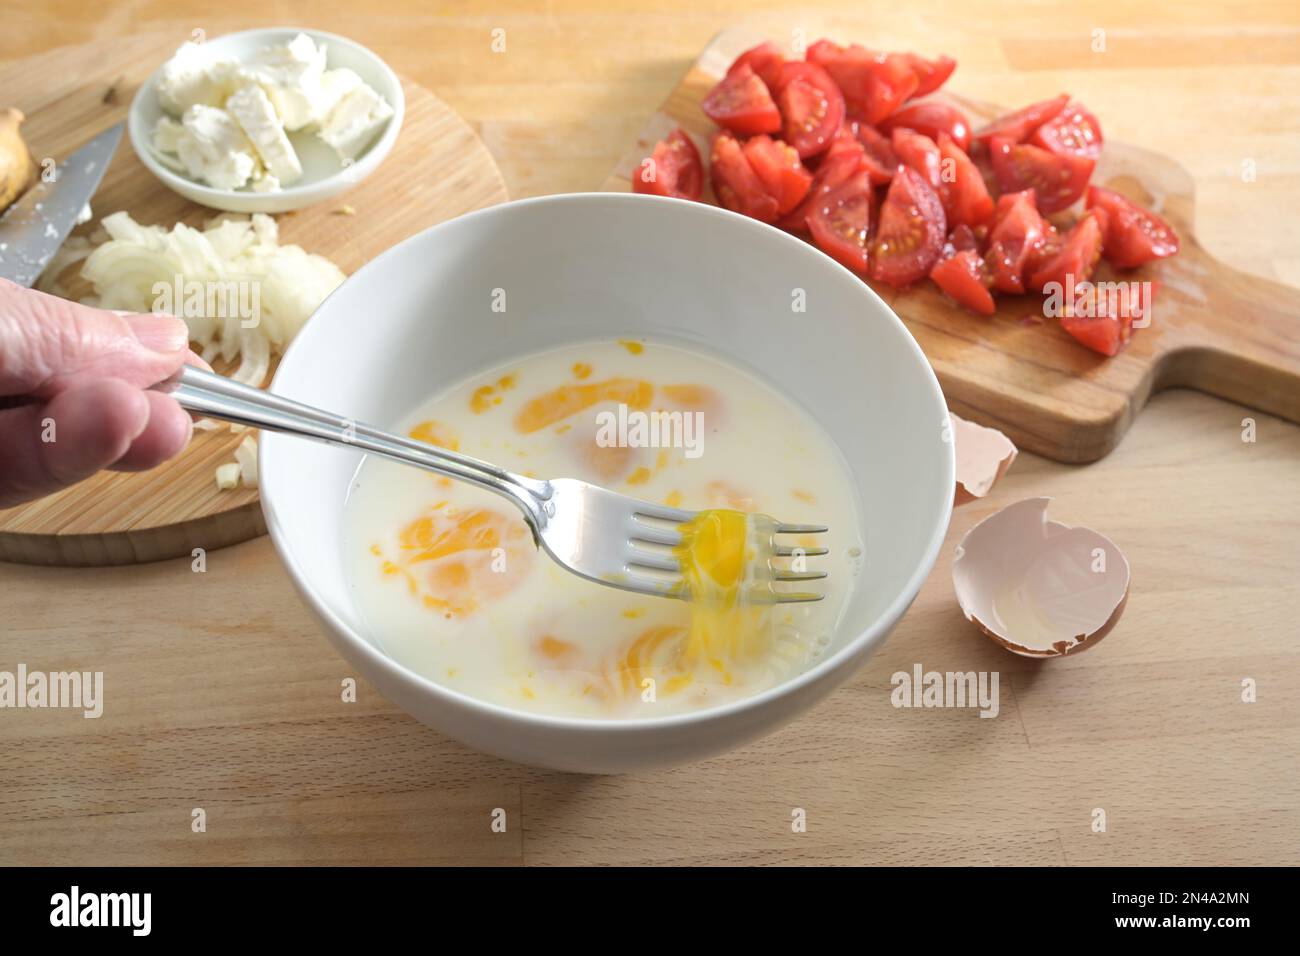 Les oeufs et le lait sont mélangés avec une fourchette dans un bol blanc sur un plan de cuisine en bois, préparation de la cuisson pour une omelette ou frittata avec des tomates et des oignons, Banque D'Images